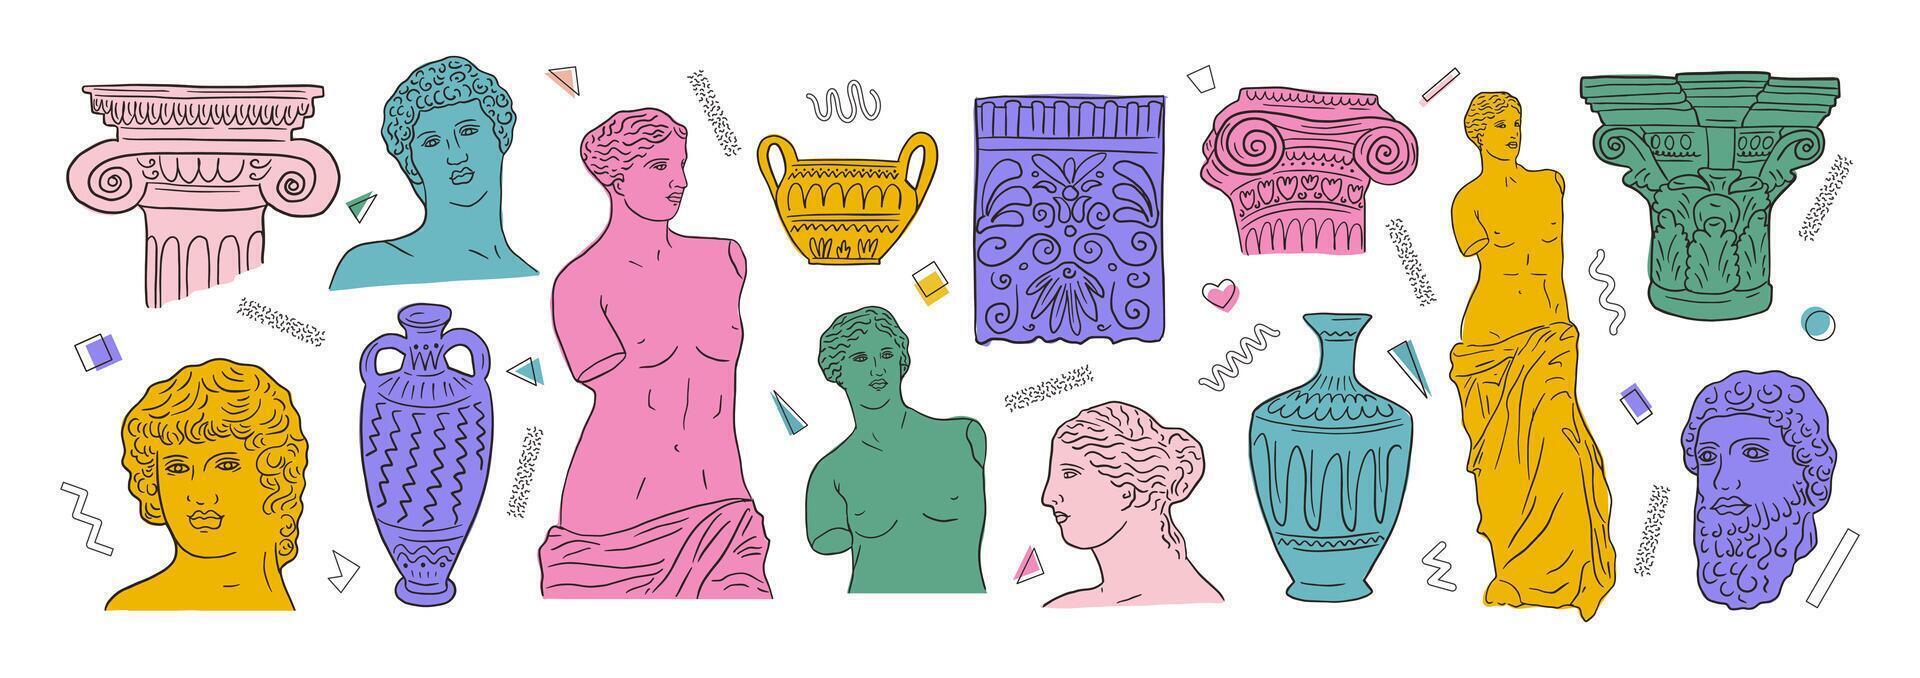 grego antigo grande definir, vários Antiguidade estátuas. cabeças, vaso, corpo. mão desenhado ilustrações do clássico escultura dentro na moda moderno estilo vetor